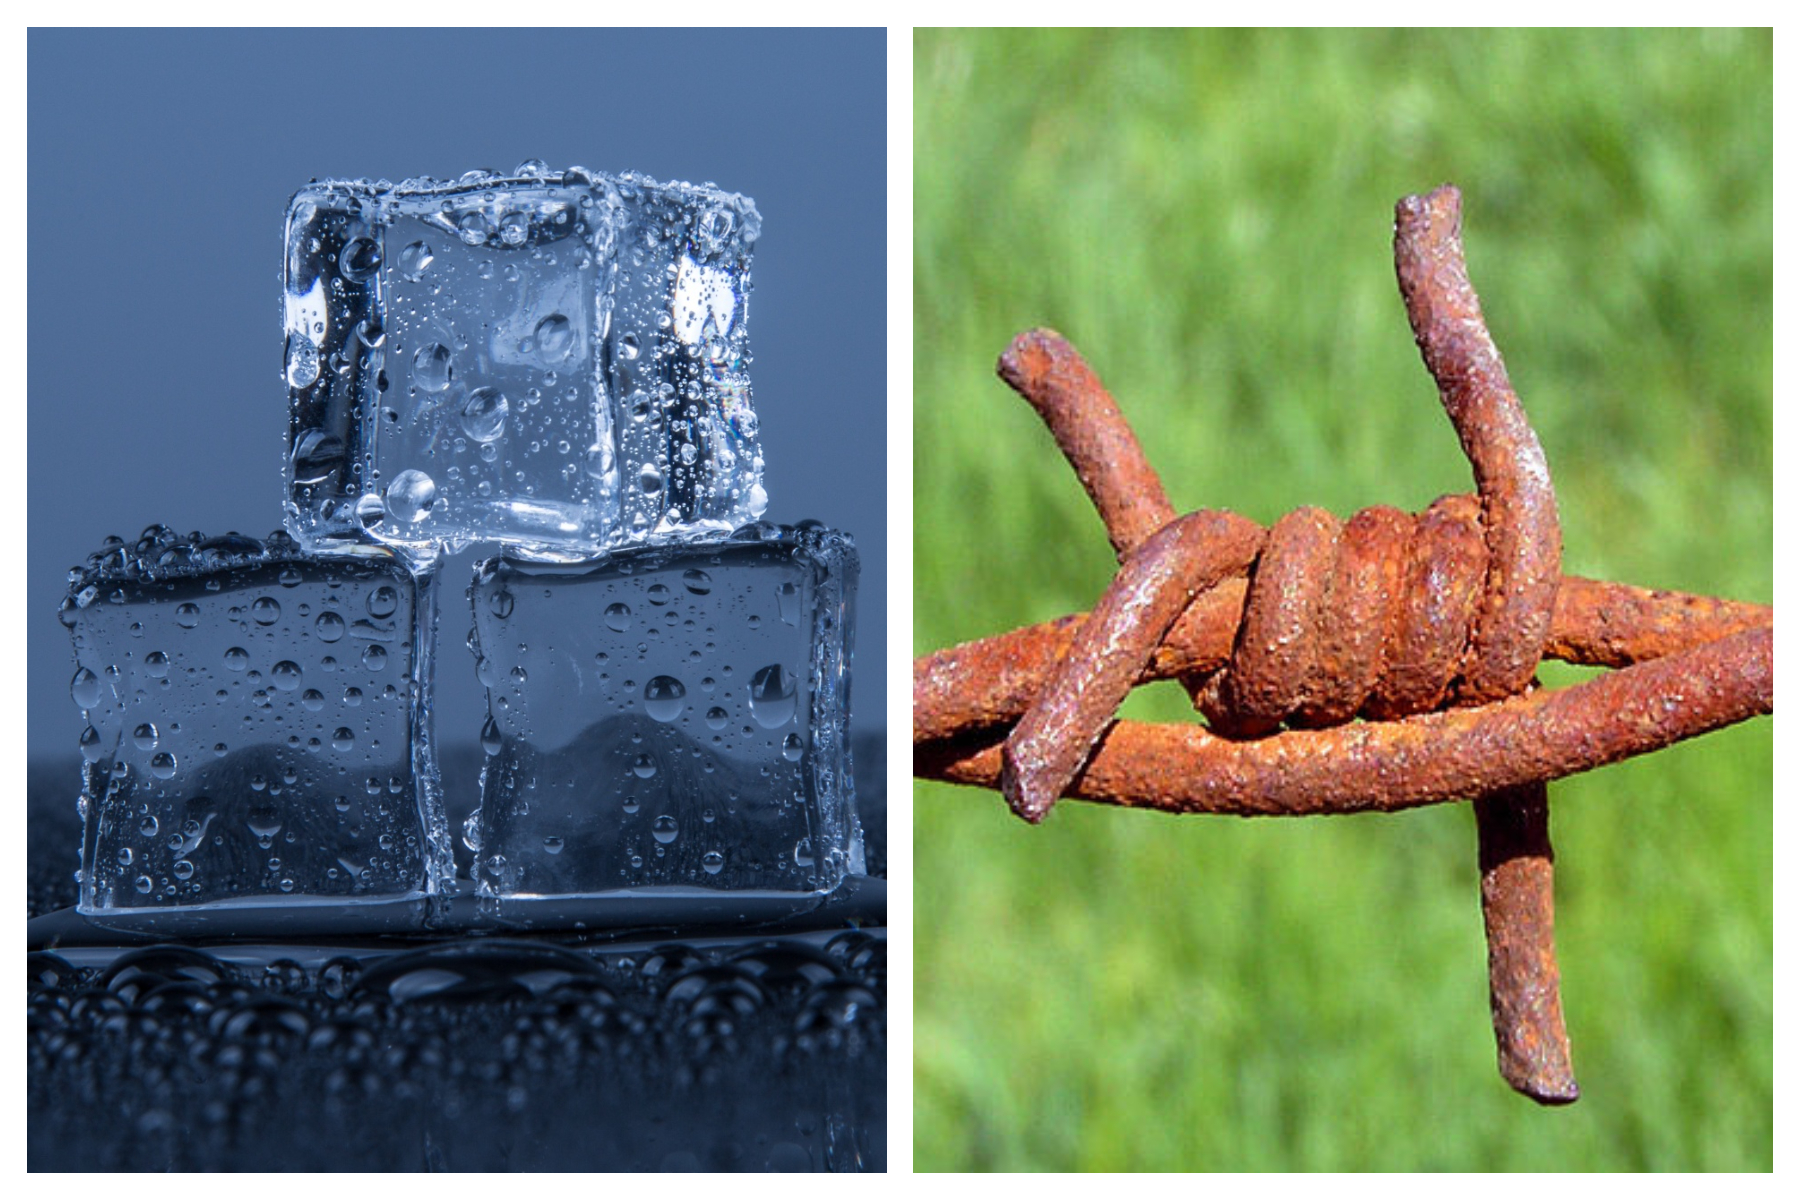 Imagen de cubitos de hielo fundiéndose y un alambre de hierro oxidado